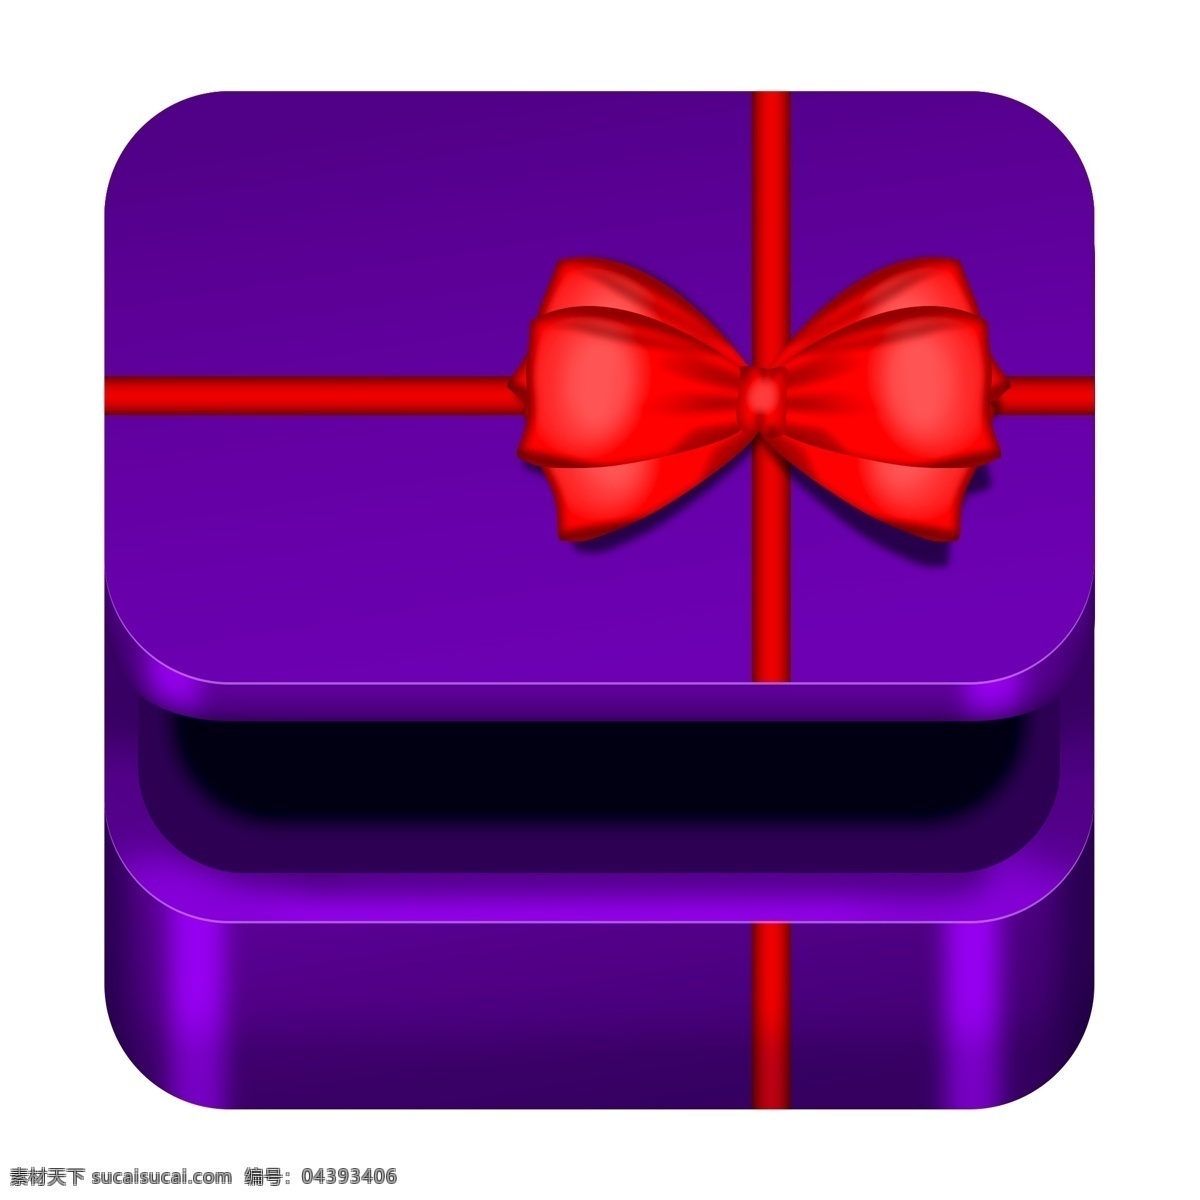 紫色 高贵 礼盒 图标素材 元素 紫色礼盒 礼盒图标 紫色图标 礼盒素材